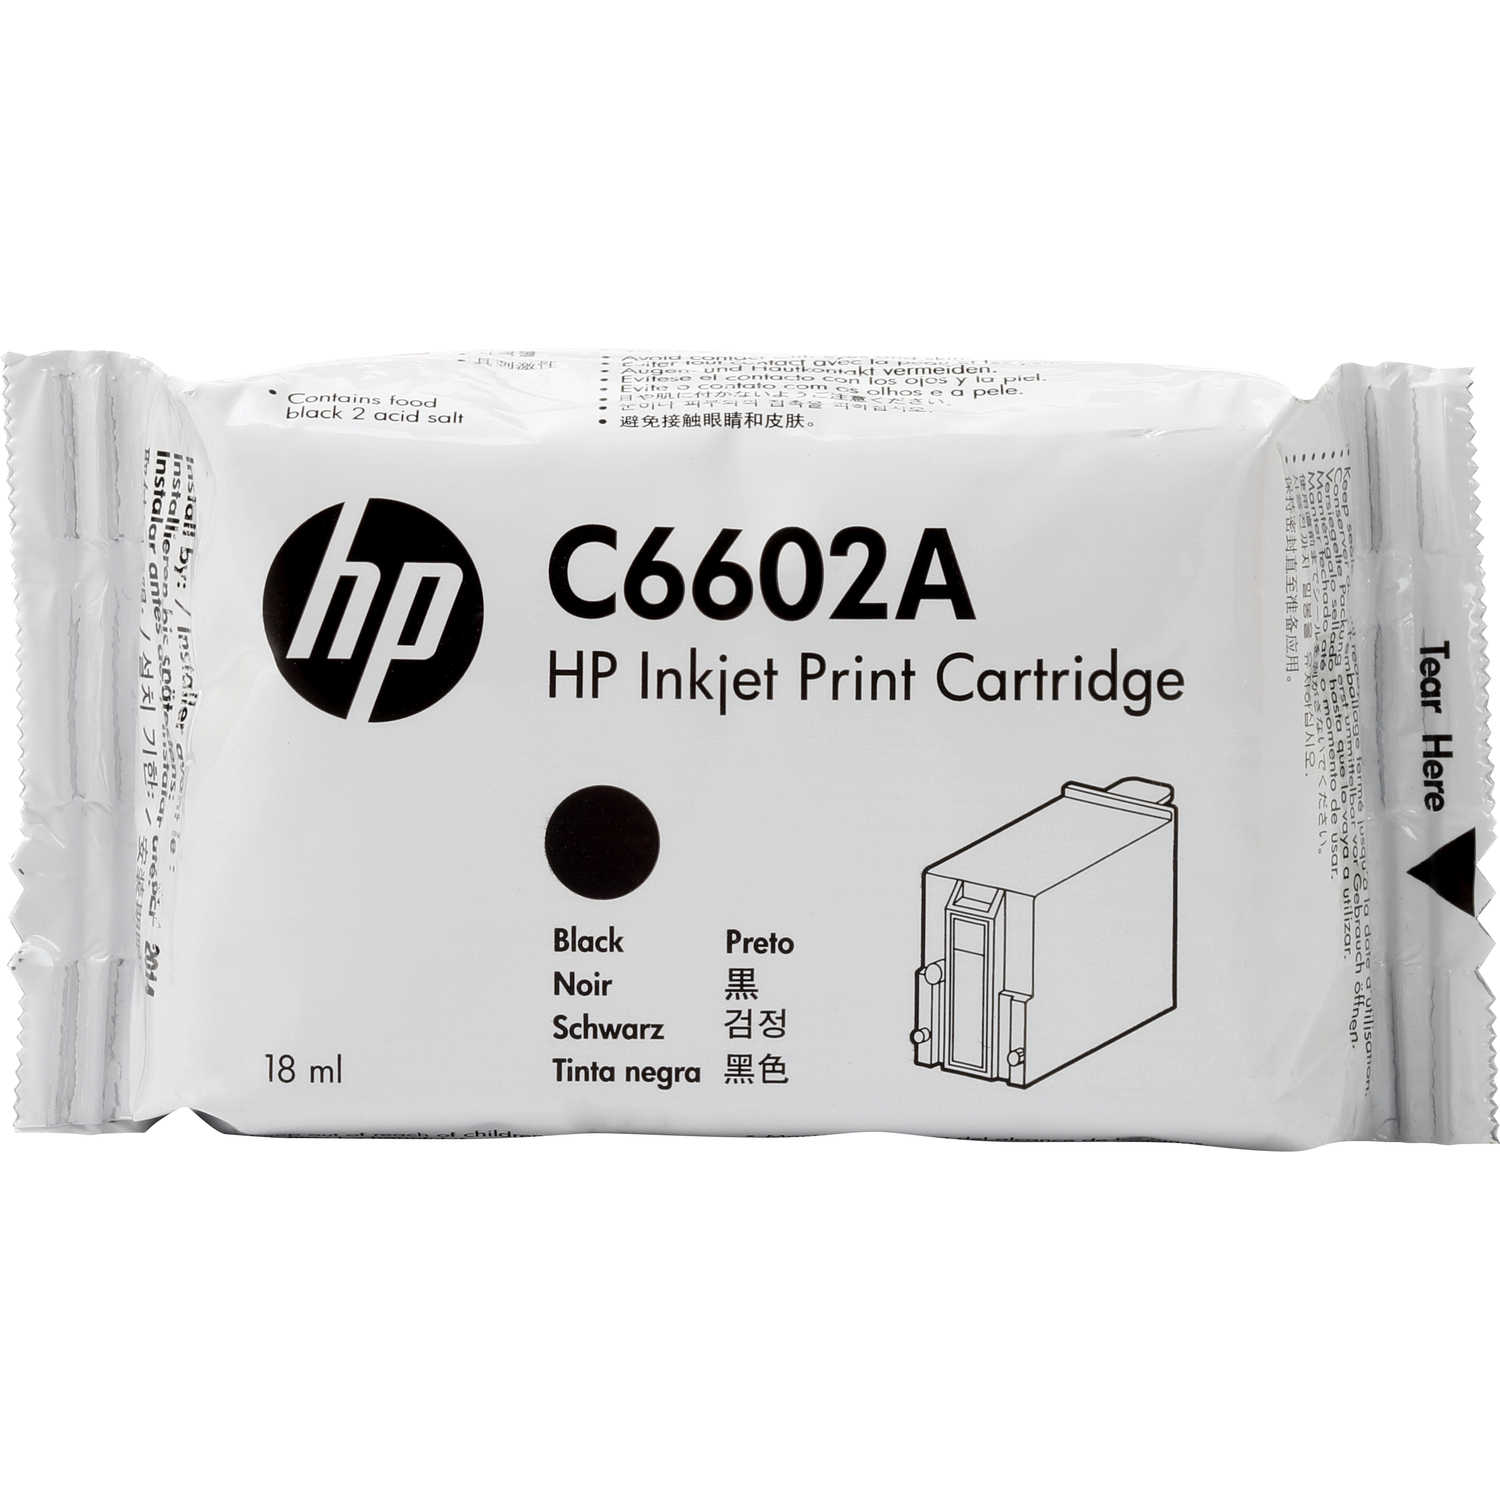  HP Inc. C6602A